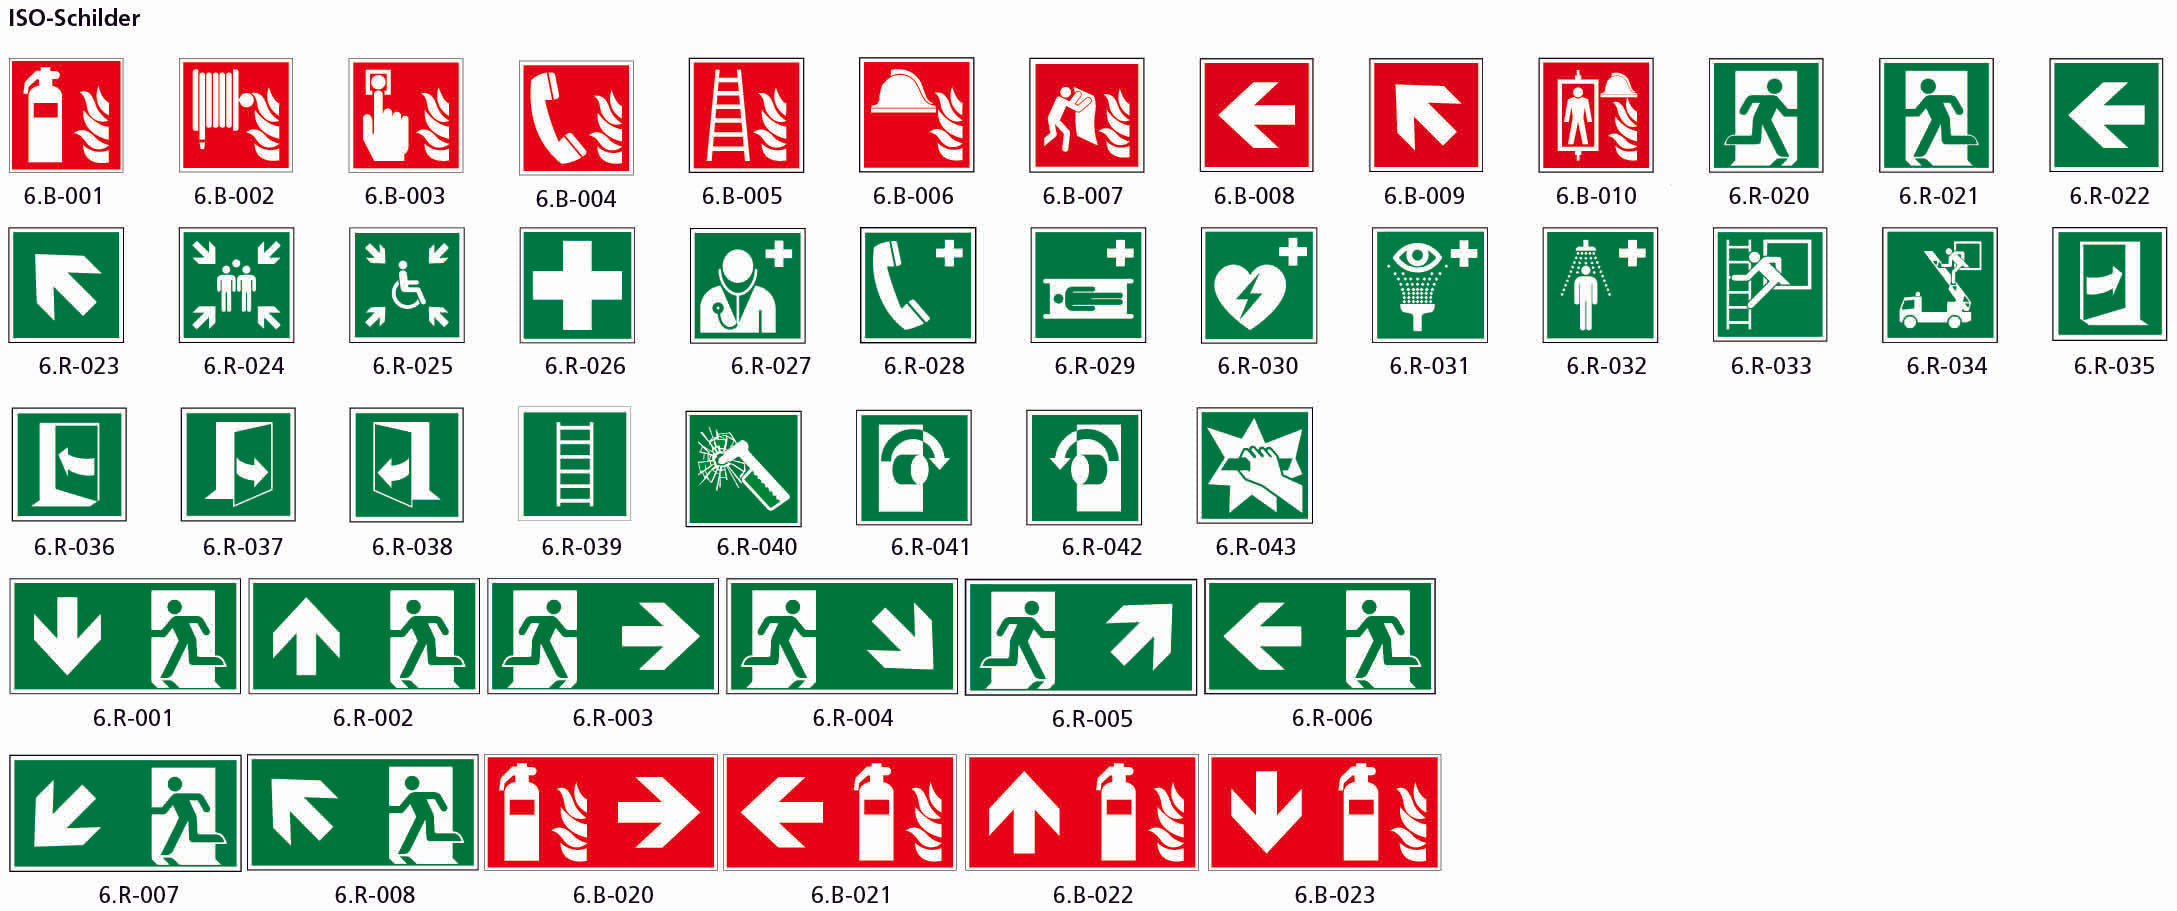 Fahnenschild doppelseitig, Rettungs- und Brandschutzzeichen, nnachleuchtend, PK, 400 x 200 mm, gemäss Logobibliothek